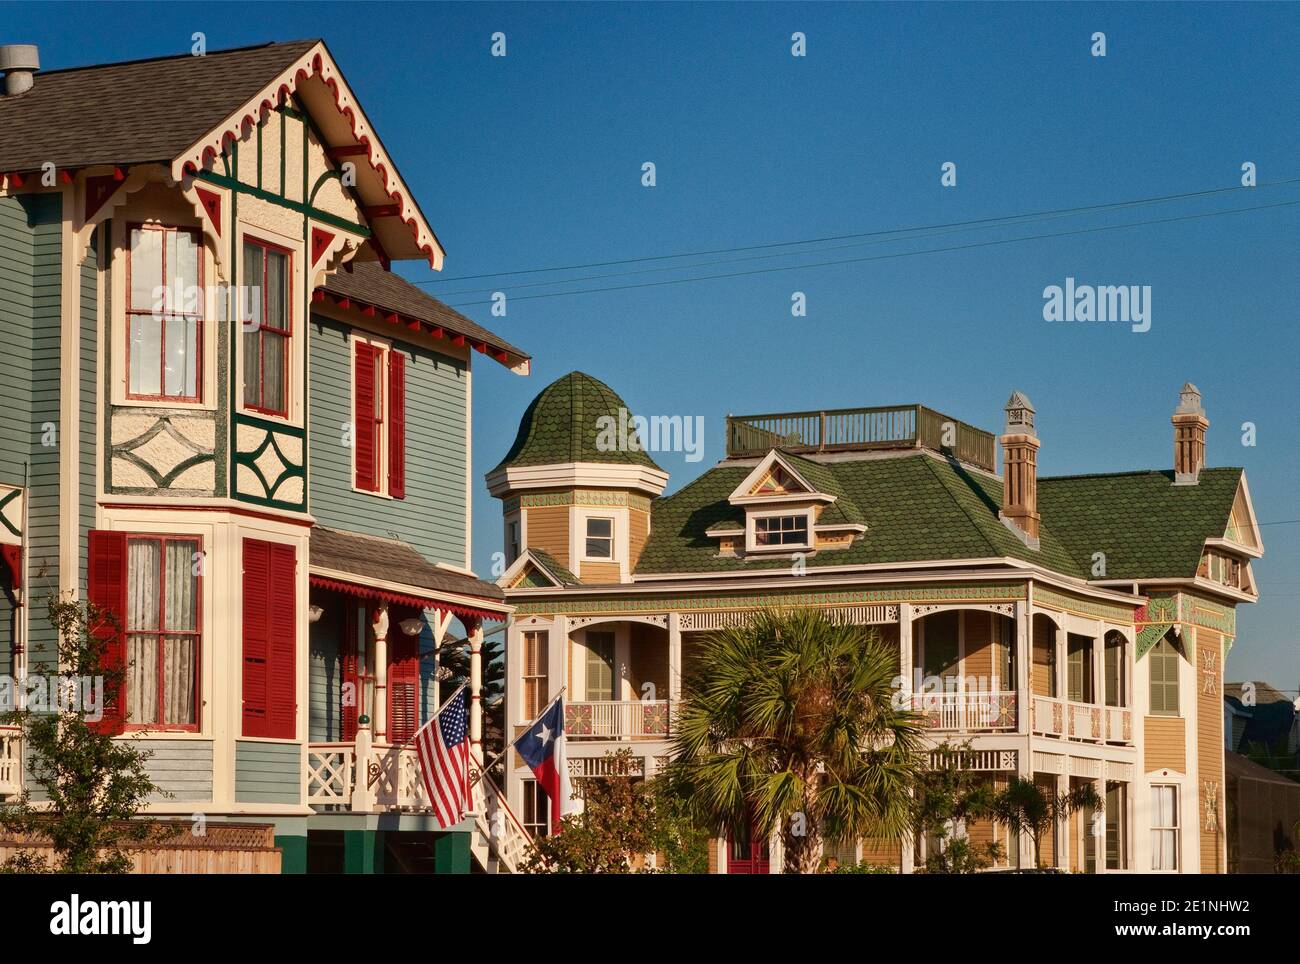 Maisons en pain d'épice sur ball Avenue, style Queen Anne d'architecture victorienne, dans le quartier historique de East End, Galveston, Texas, États-Unis Banque D'Images